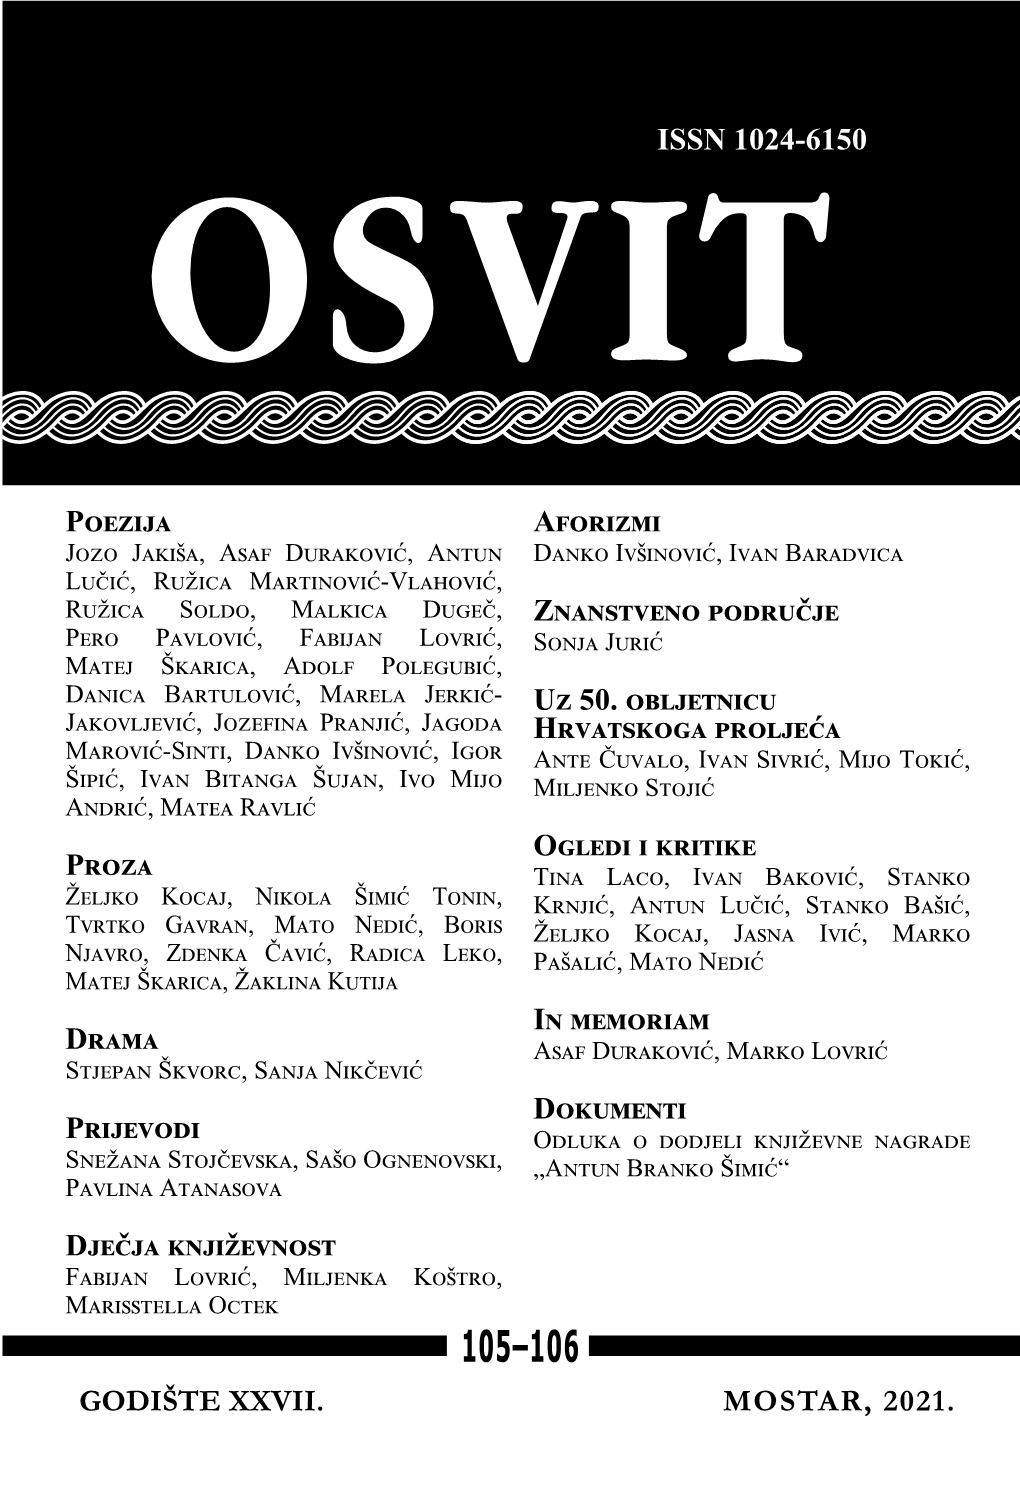 OSVIT 105-106 Mostar, 2021